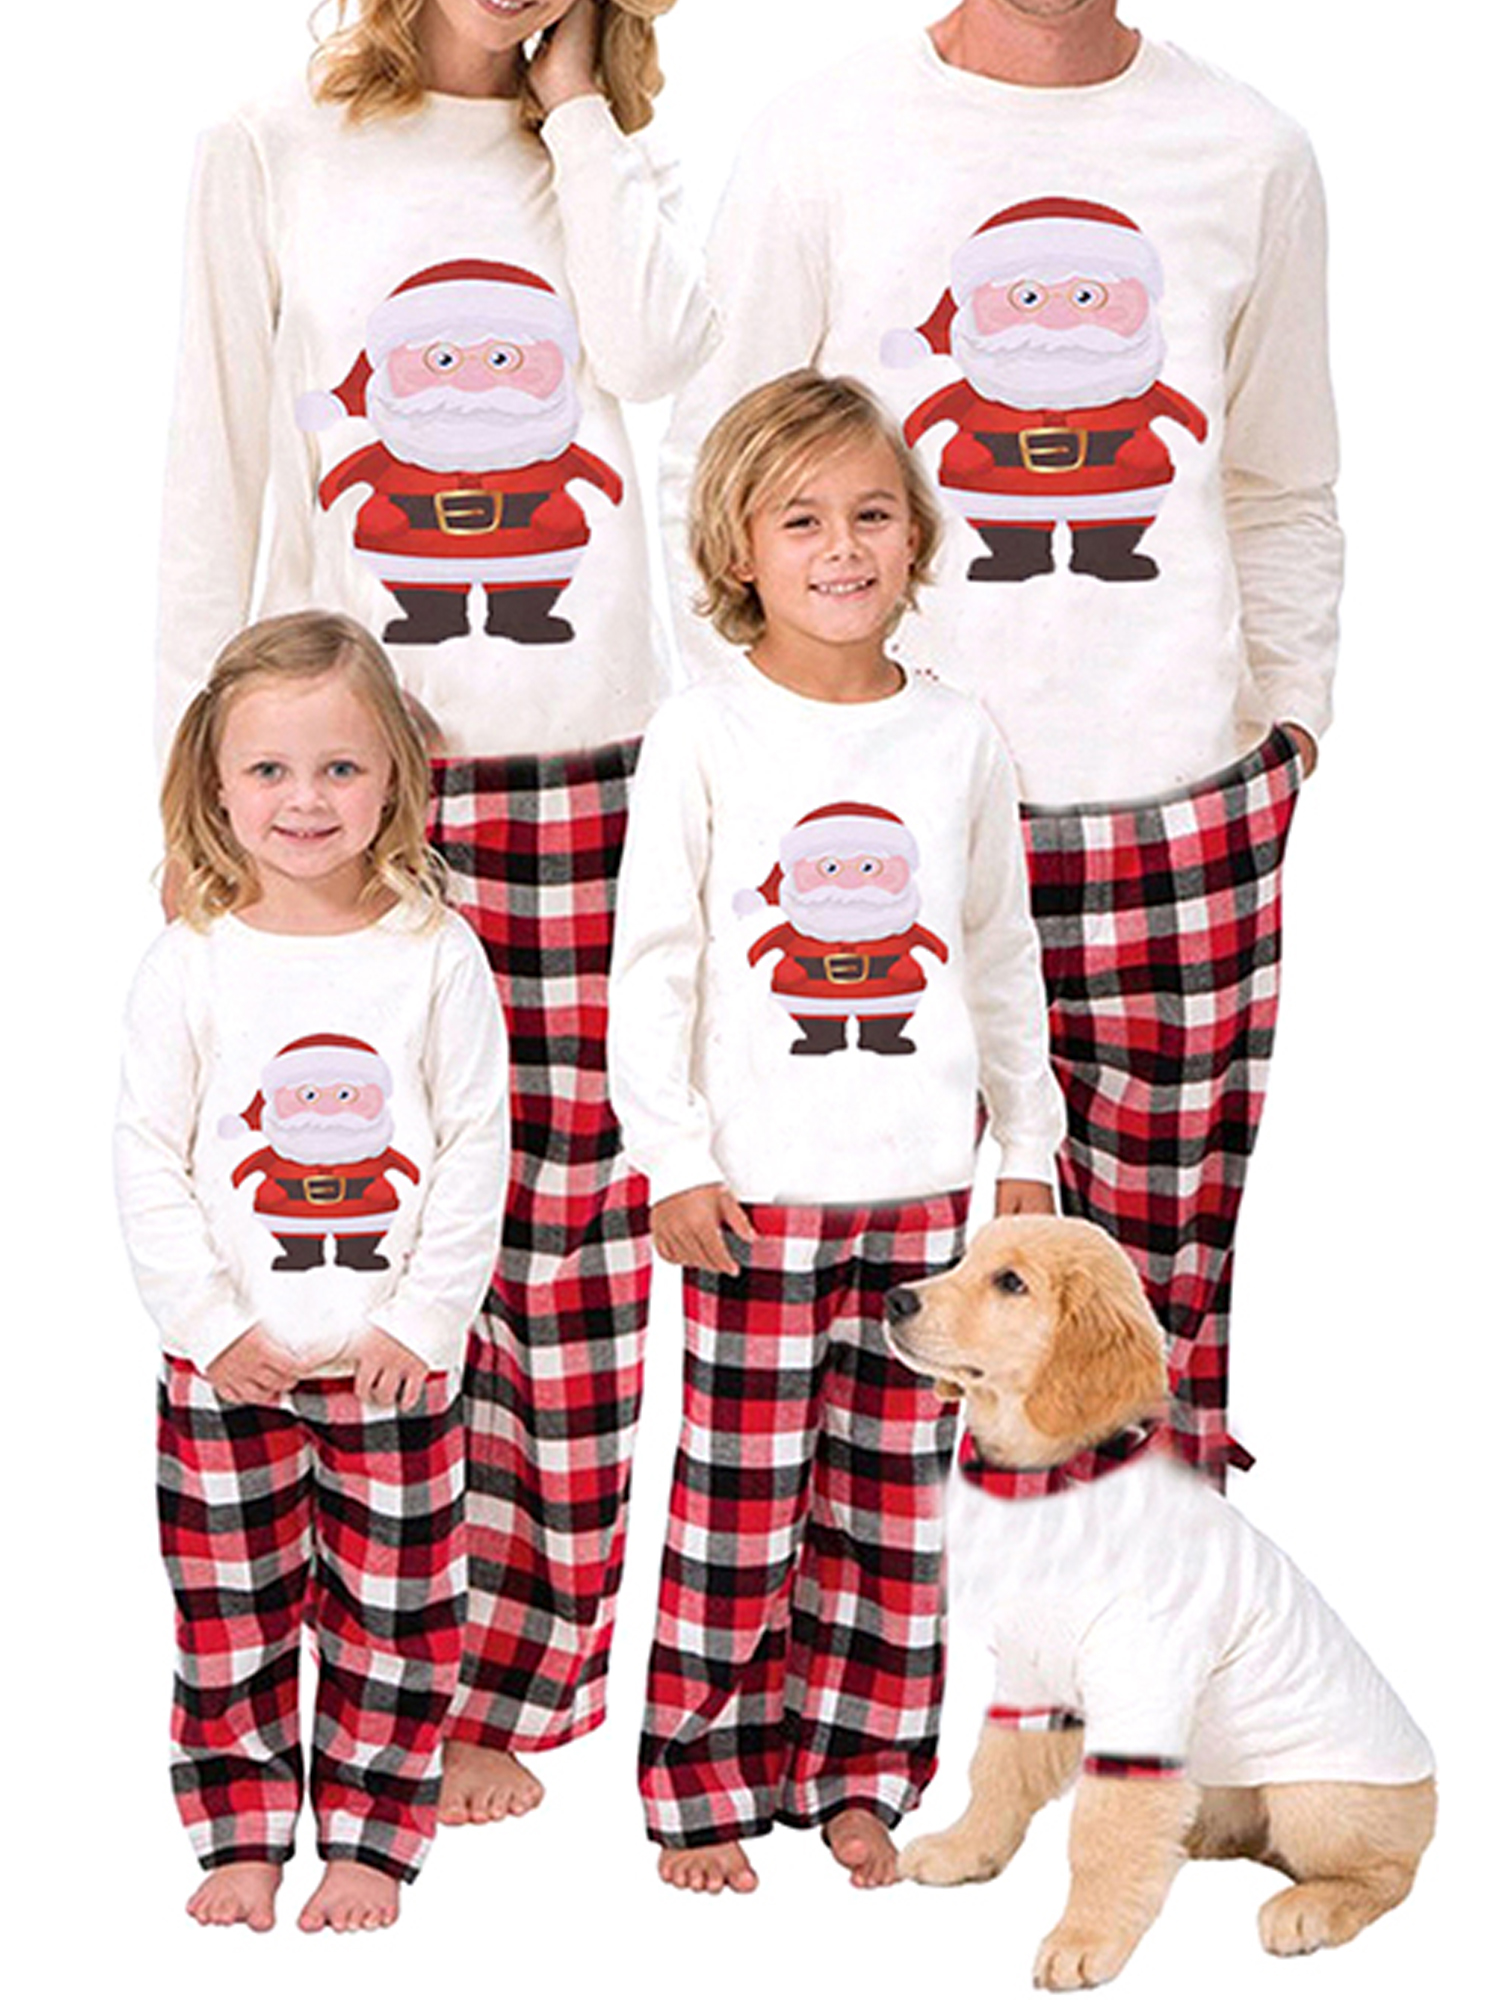 Yinyinxull Family Pajamas Matching Sets Women Men Kids Baby Sleepwear Santa Claus Tops Plaid Pants Pyjamas Homewear - image 1 of 6